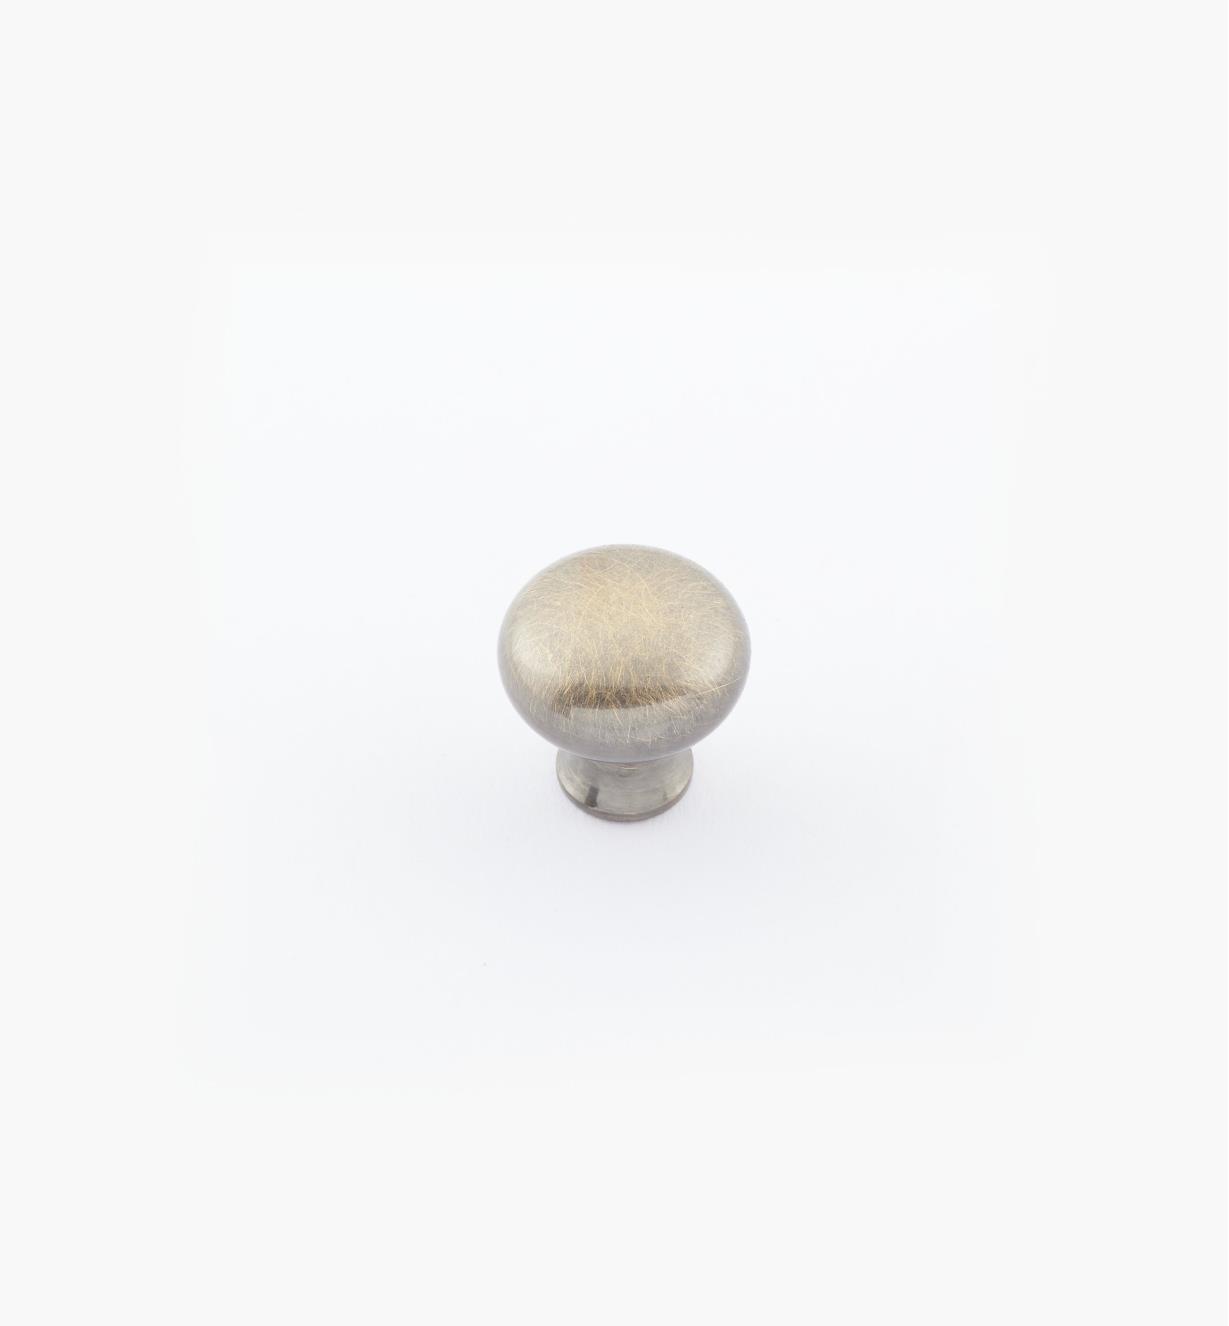 02W1411 - Bouton bombé en laiton de 1/2 po × 1/2 po, fini laiton antique